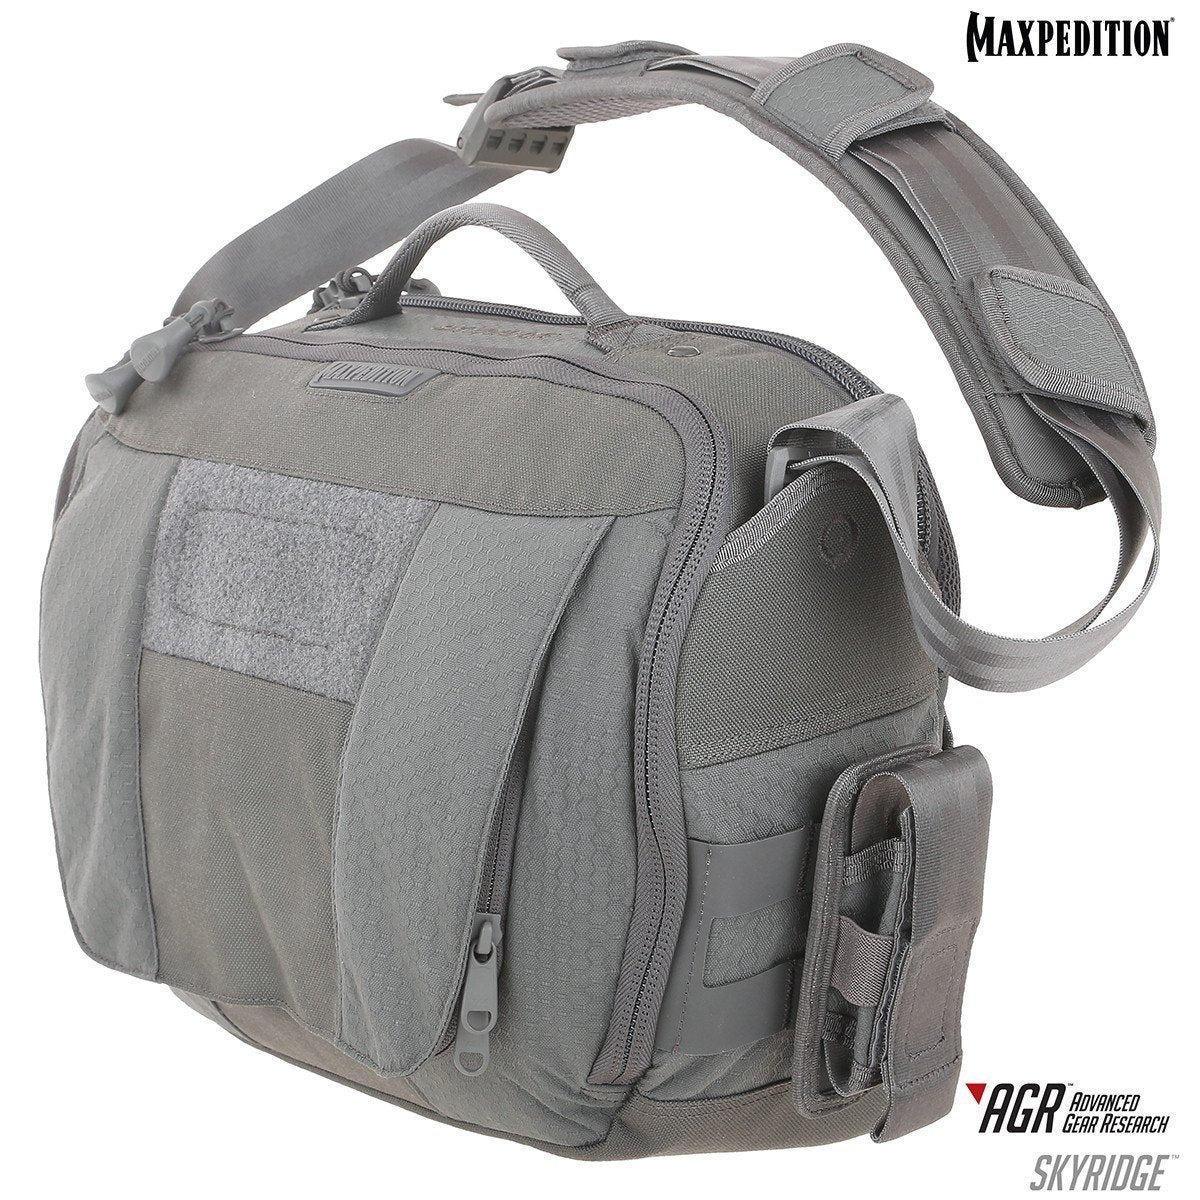 Maxpedition Skyridge Tech Messenger Bag 12.5L Tactical Distributors Ltd New Zealand